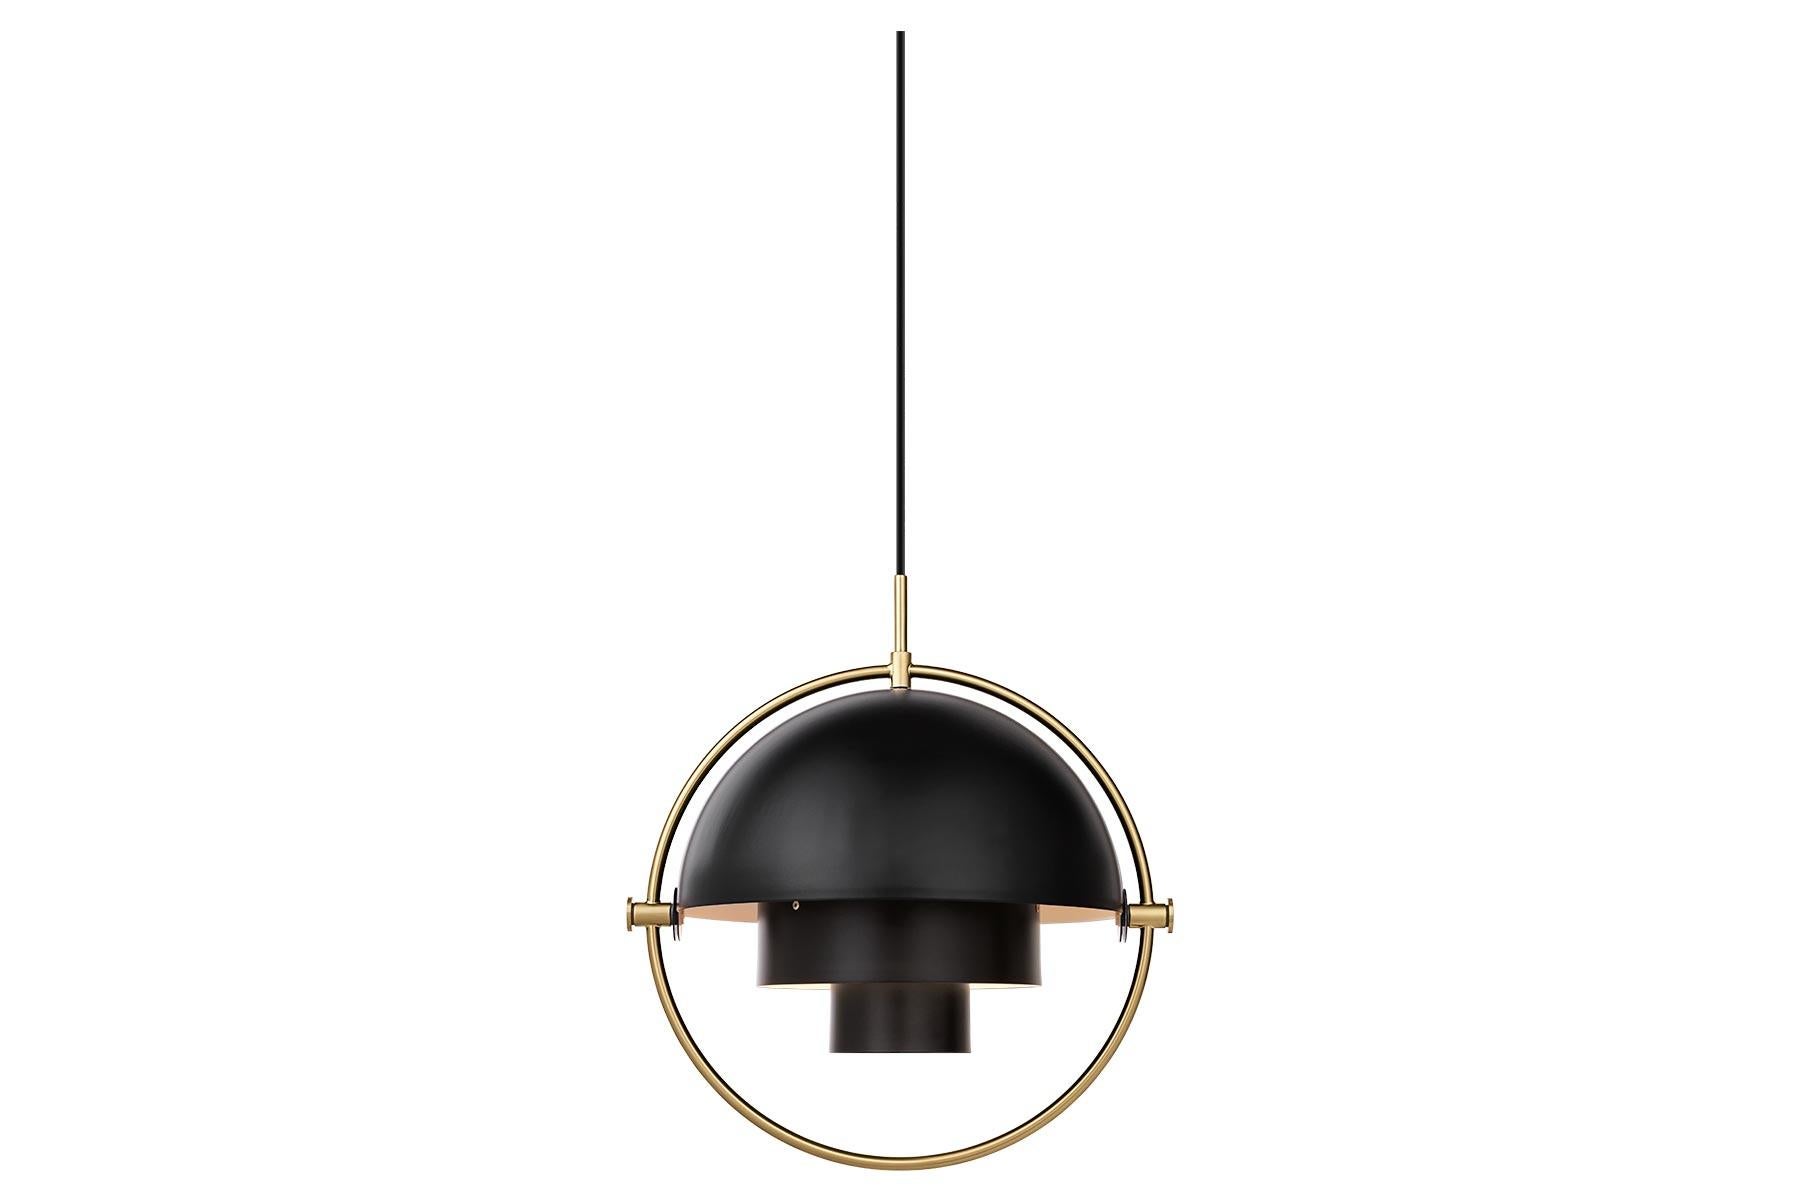 Die Multi-Lite Pendelleuchte erinnert an die goldene Ära des dänischen Designs mit ihrer charakteristischen Form zweier gegenüberliegender, beweglicher Schirme, die eine persönliche Installation und eine breite Palette von Beleuchtungswerten in